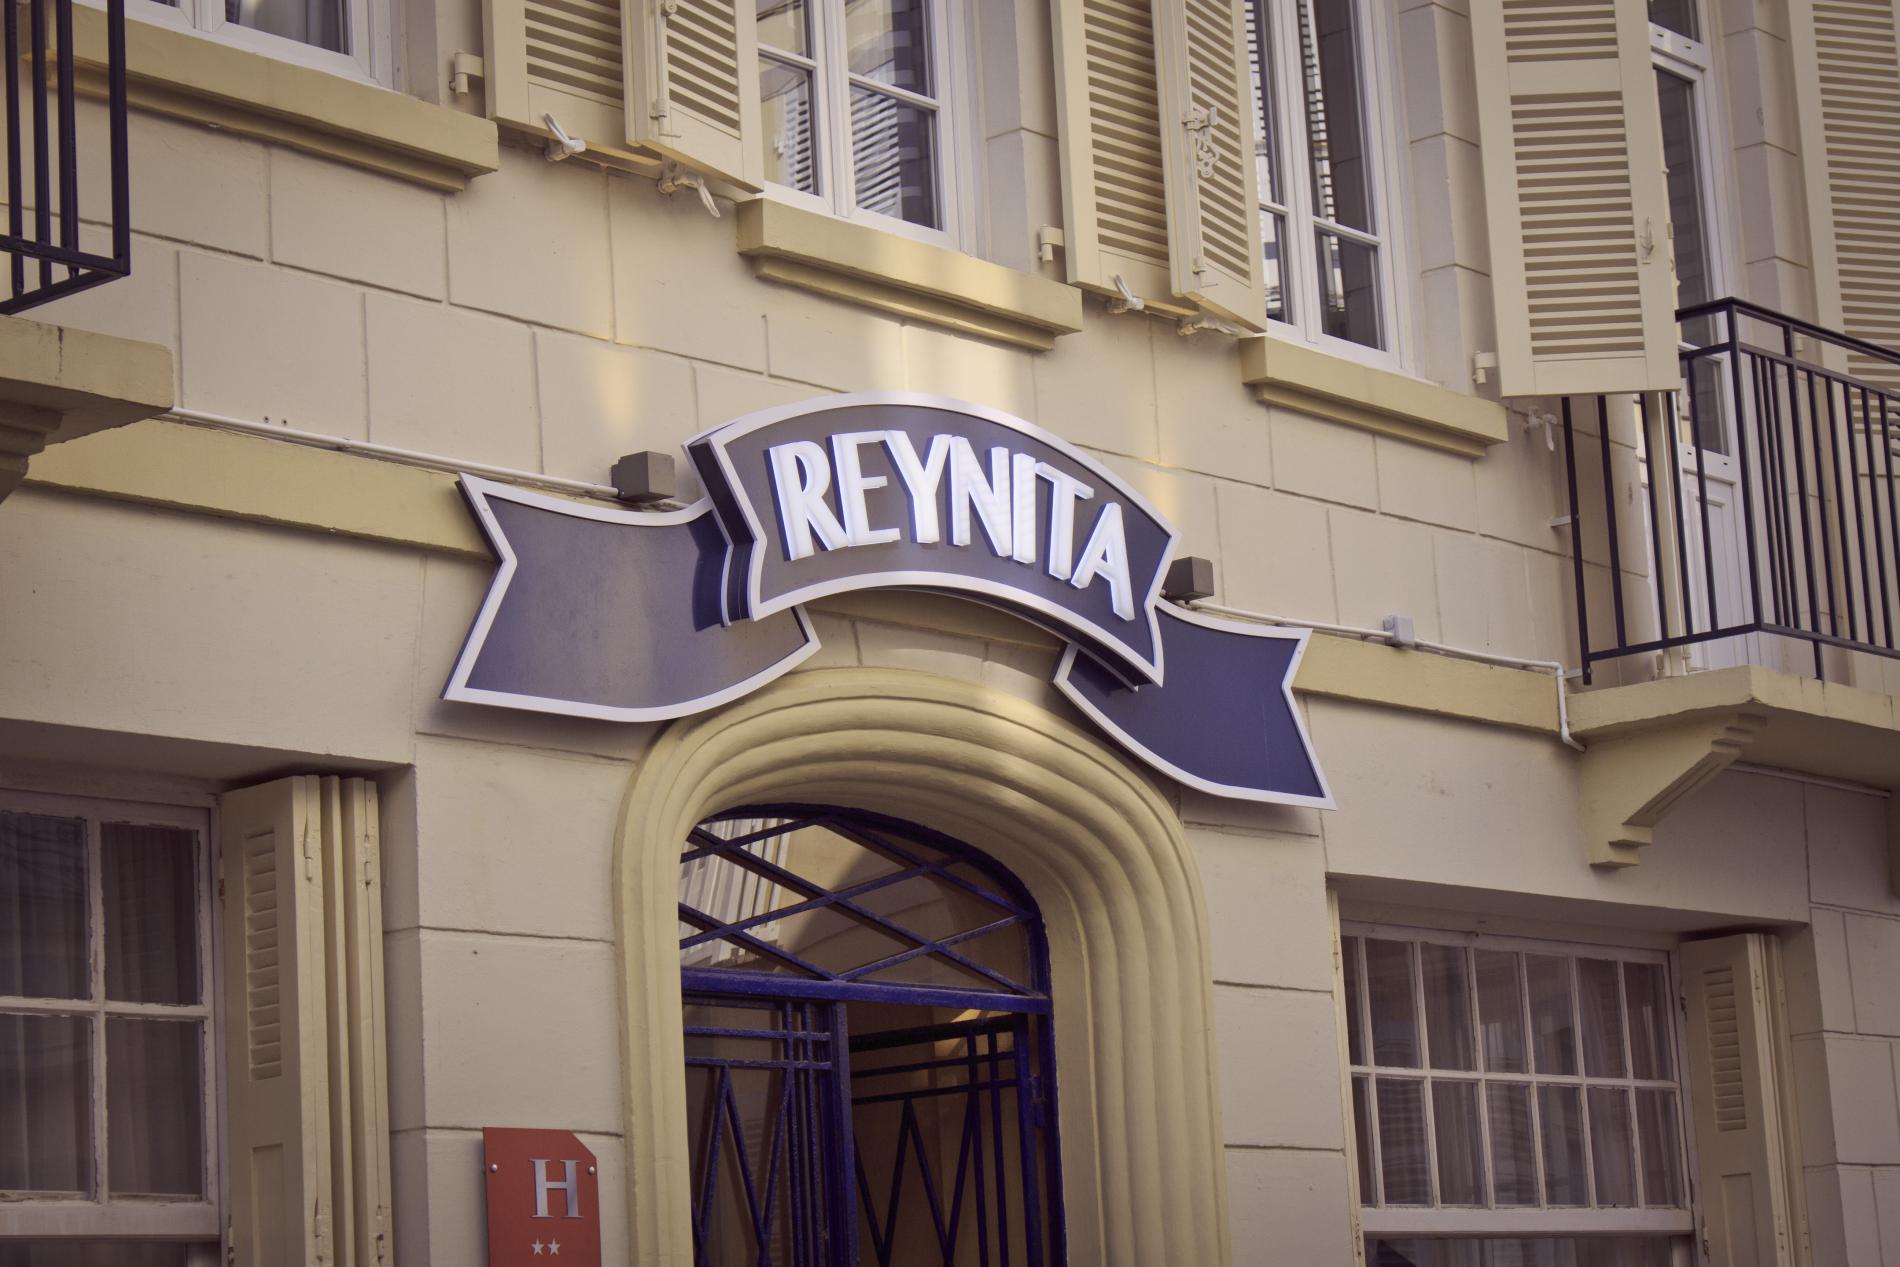 Hotel à Trouville proche Deauville Le Reynita